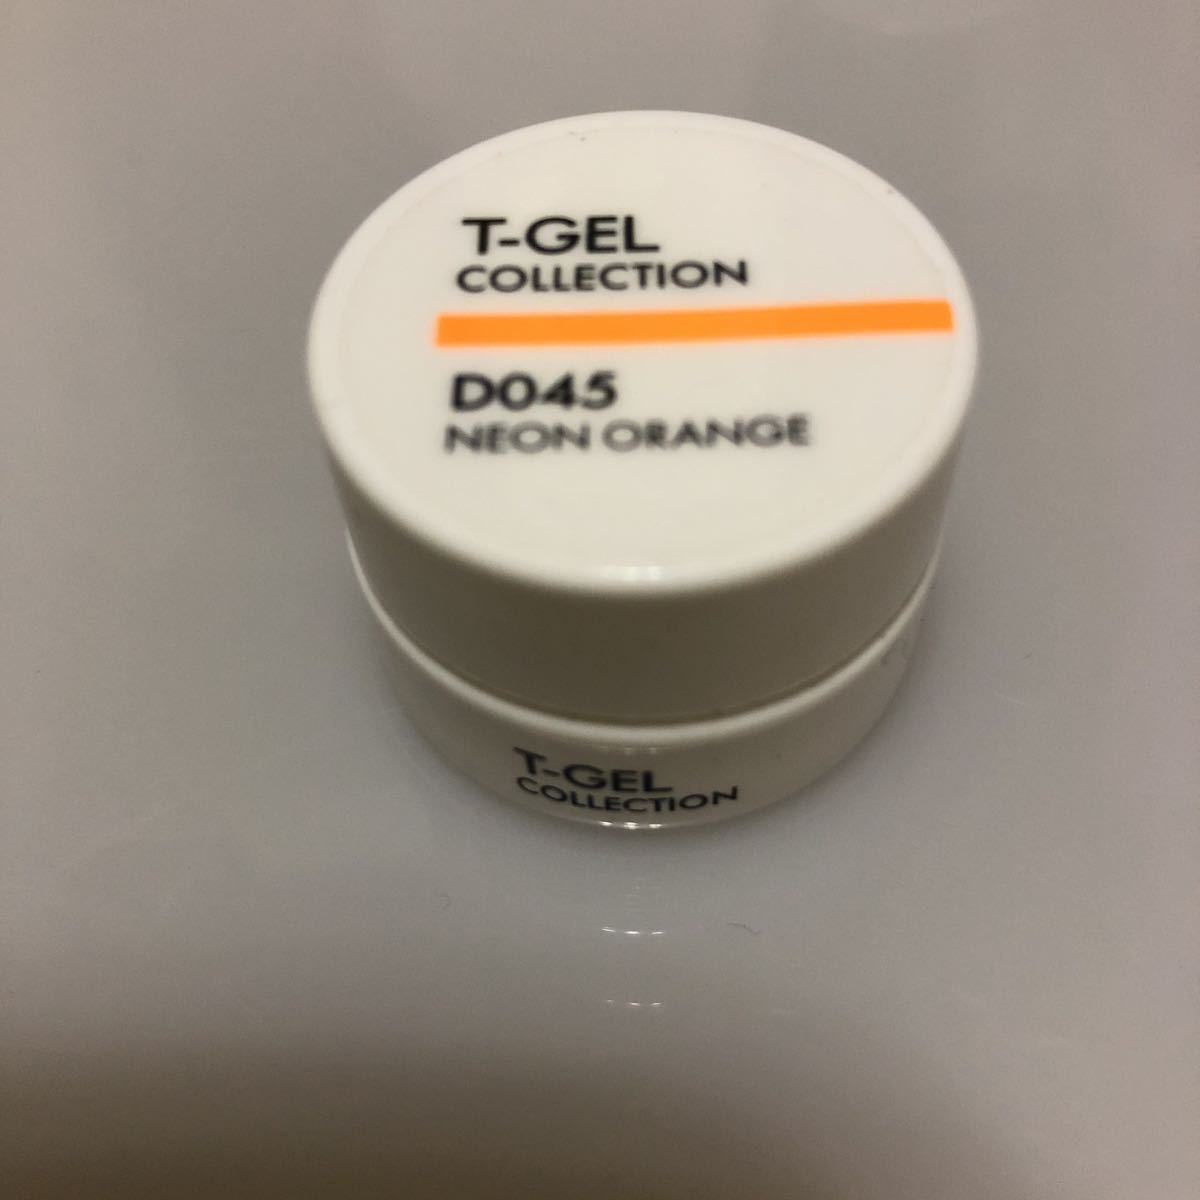 T-GEL COLLECTION カラージェル D045ネオンオレンジの画像1